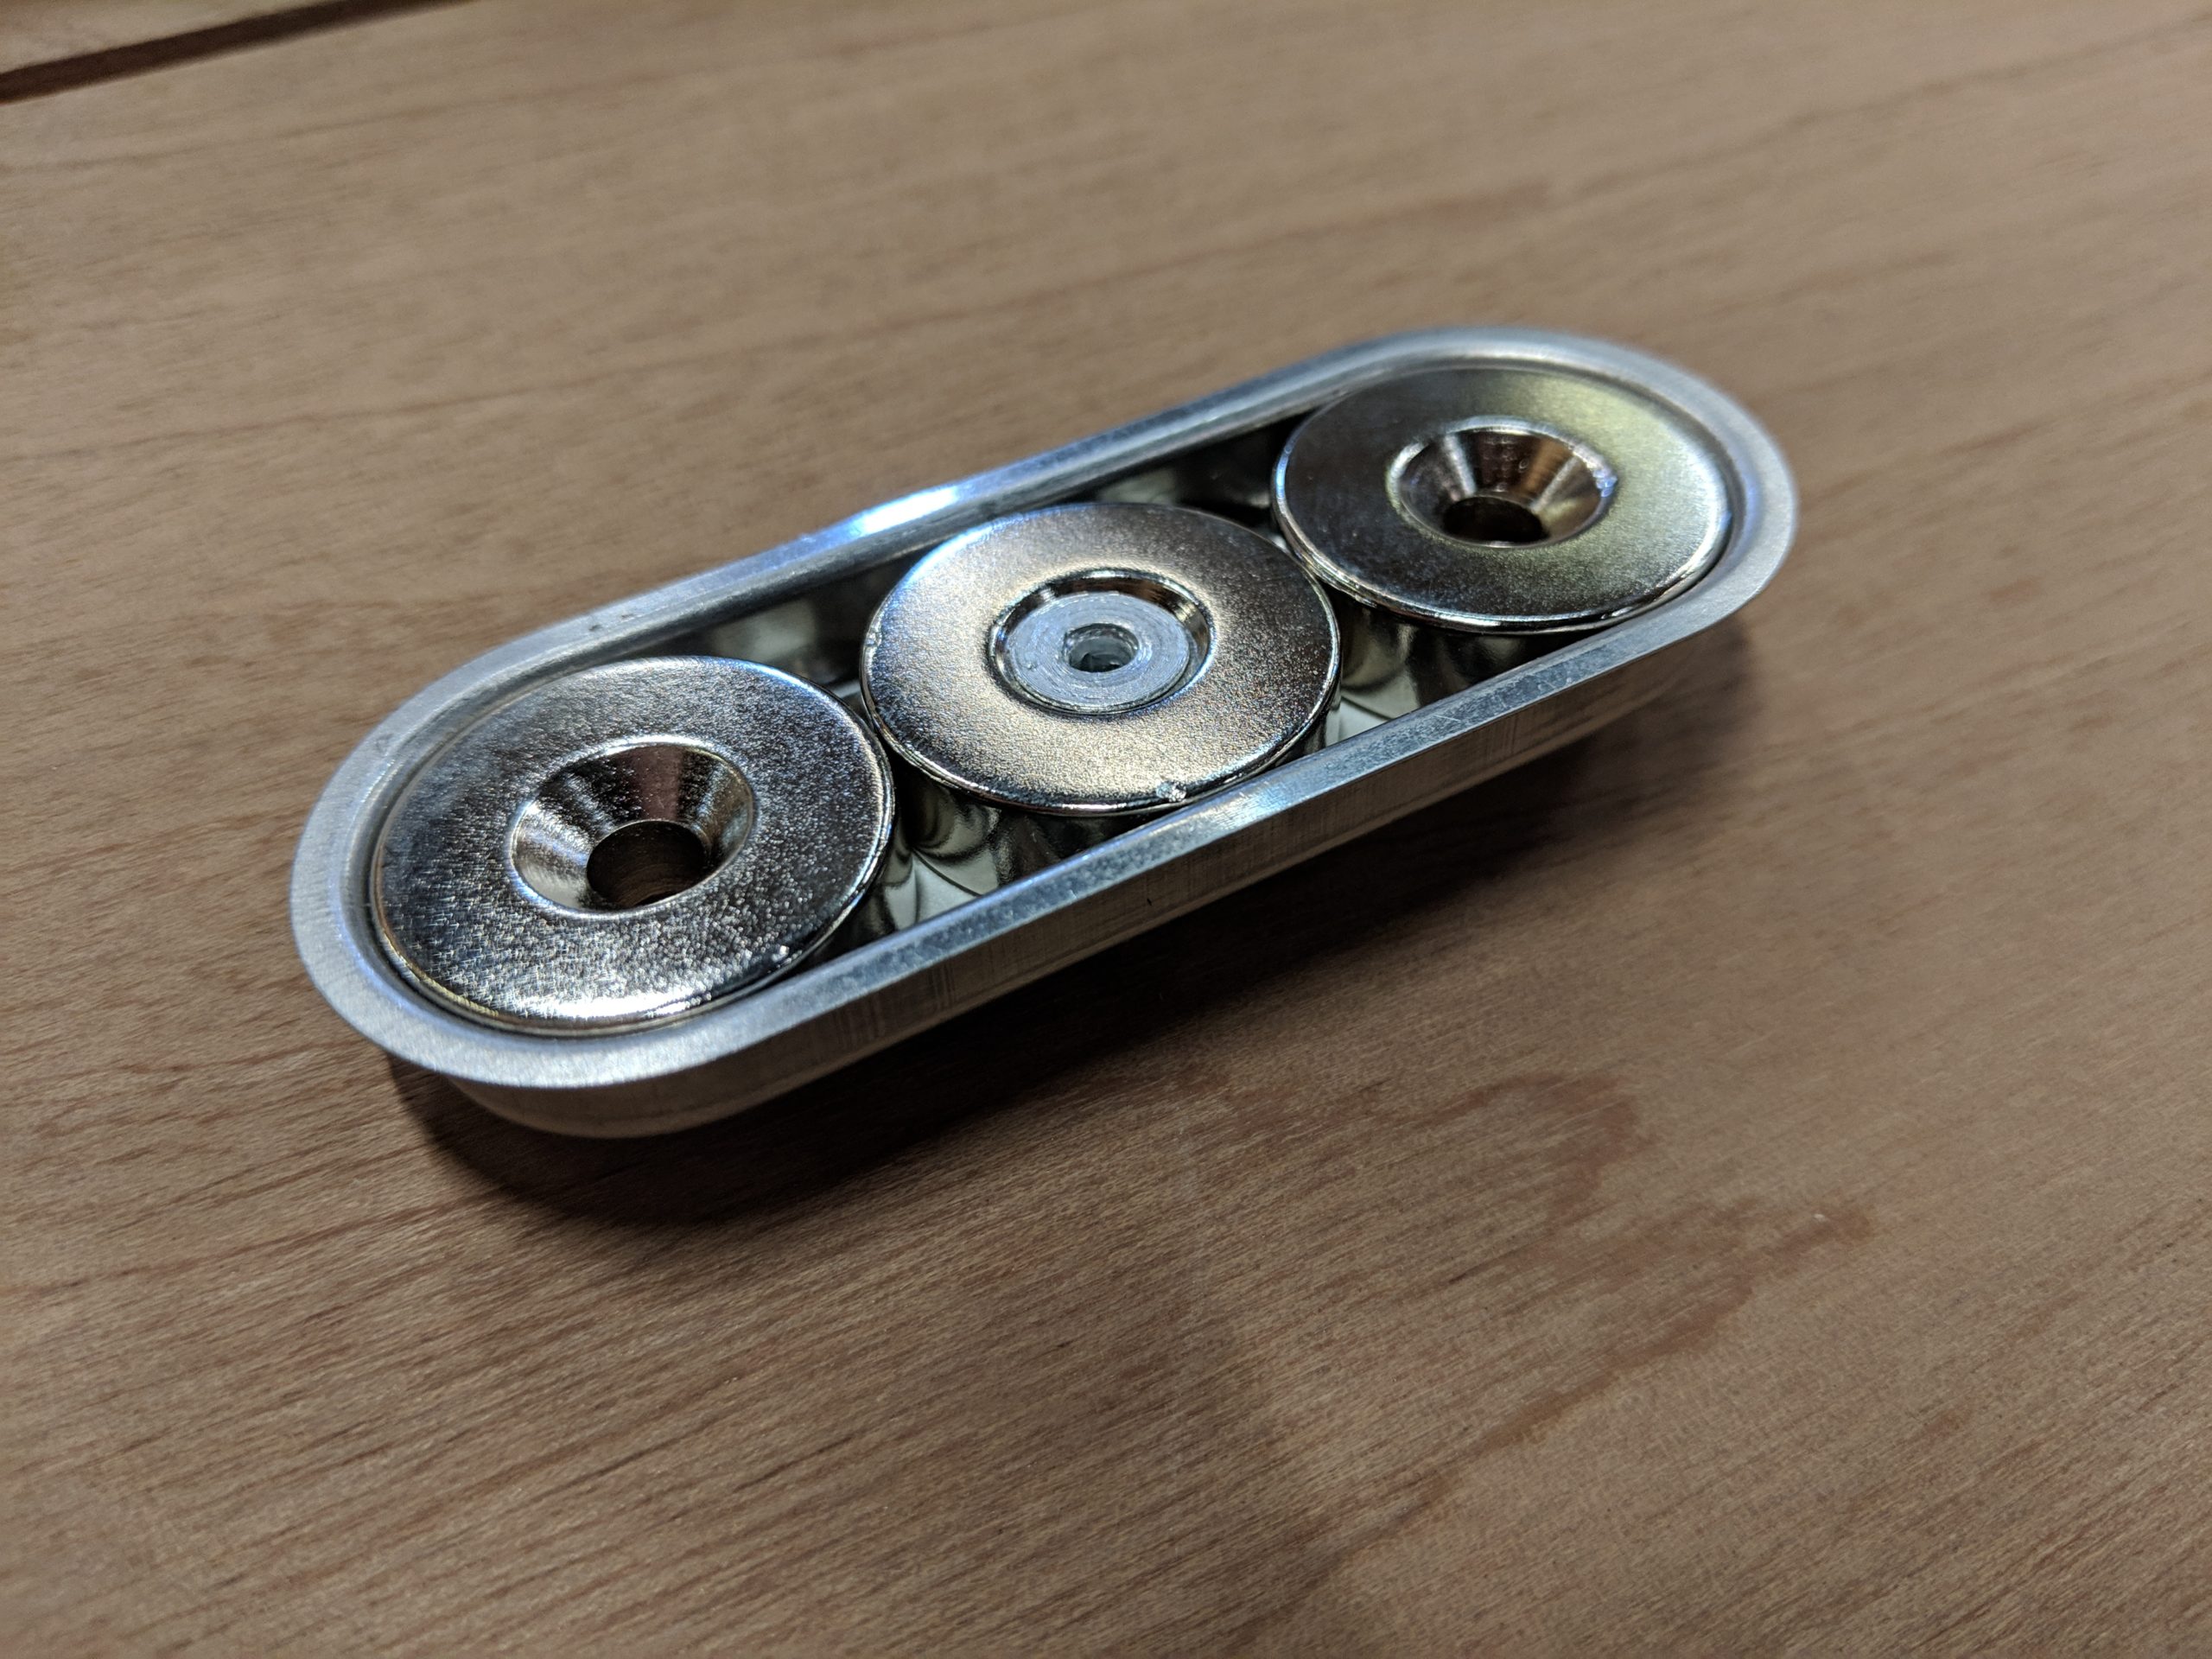 Magnetic Door Catch | How does it work?